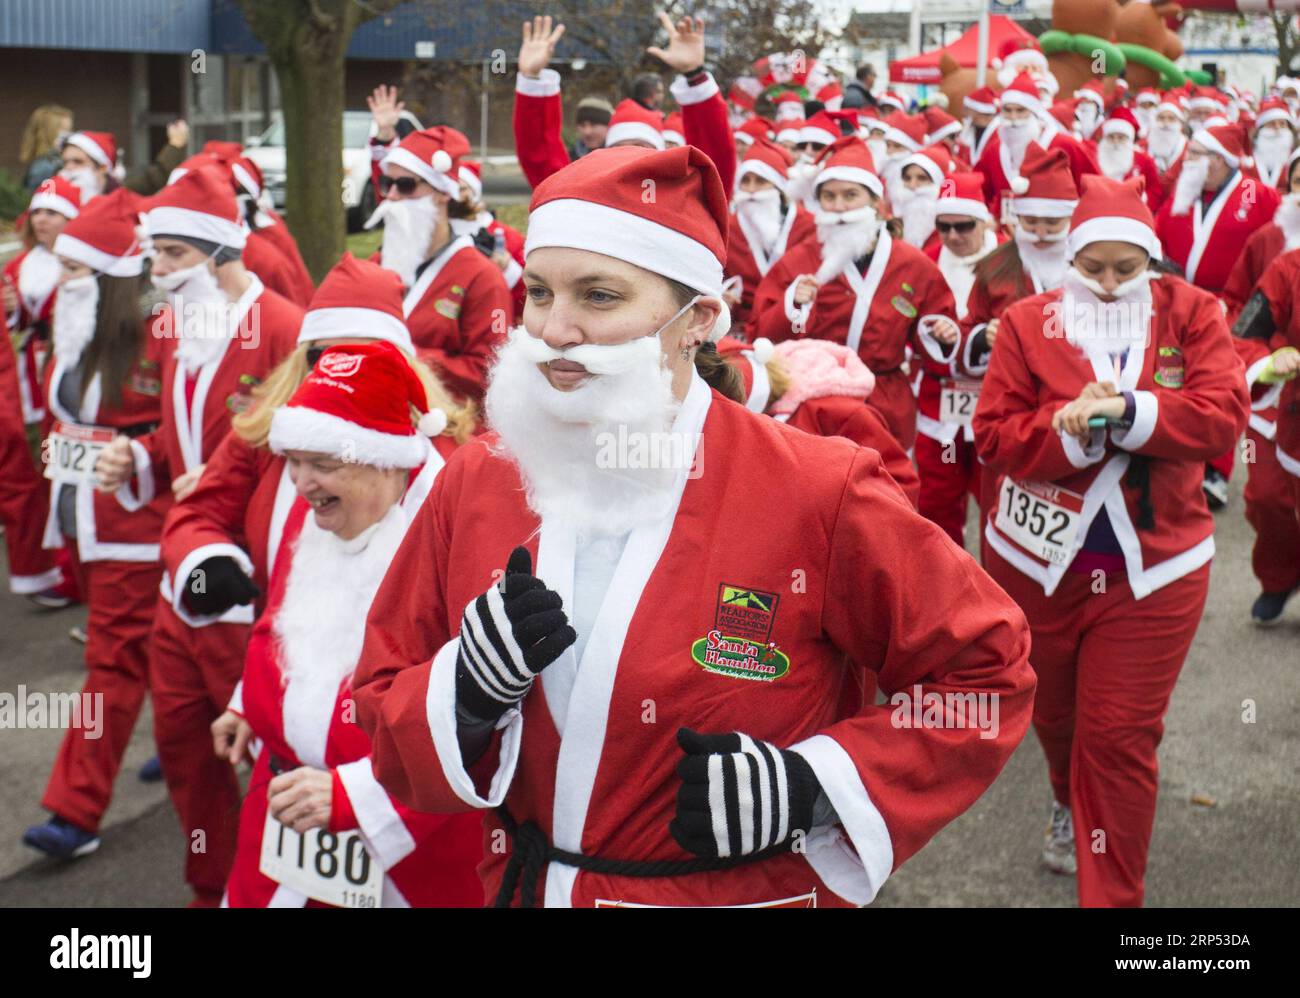 181125) -- HAMILTON (CANADÁ), 25 de noviembre de 2018 -- Participantes  vestidos con trajes de Papá Noel participarán en la carrera 2018 de Santa  5K en Hamilton, Ontario, Canadá, el 25 de